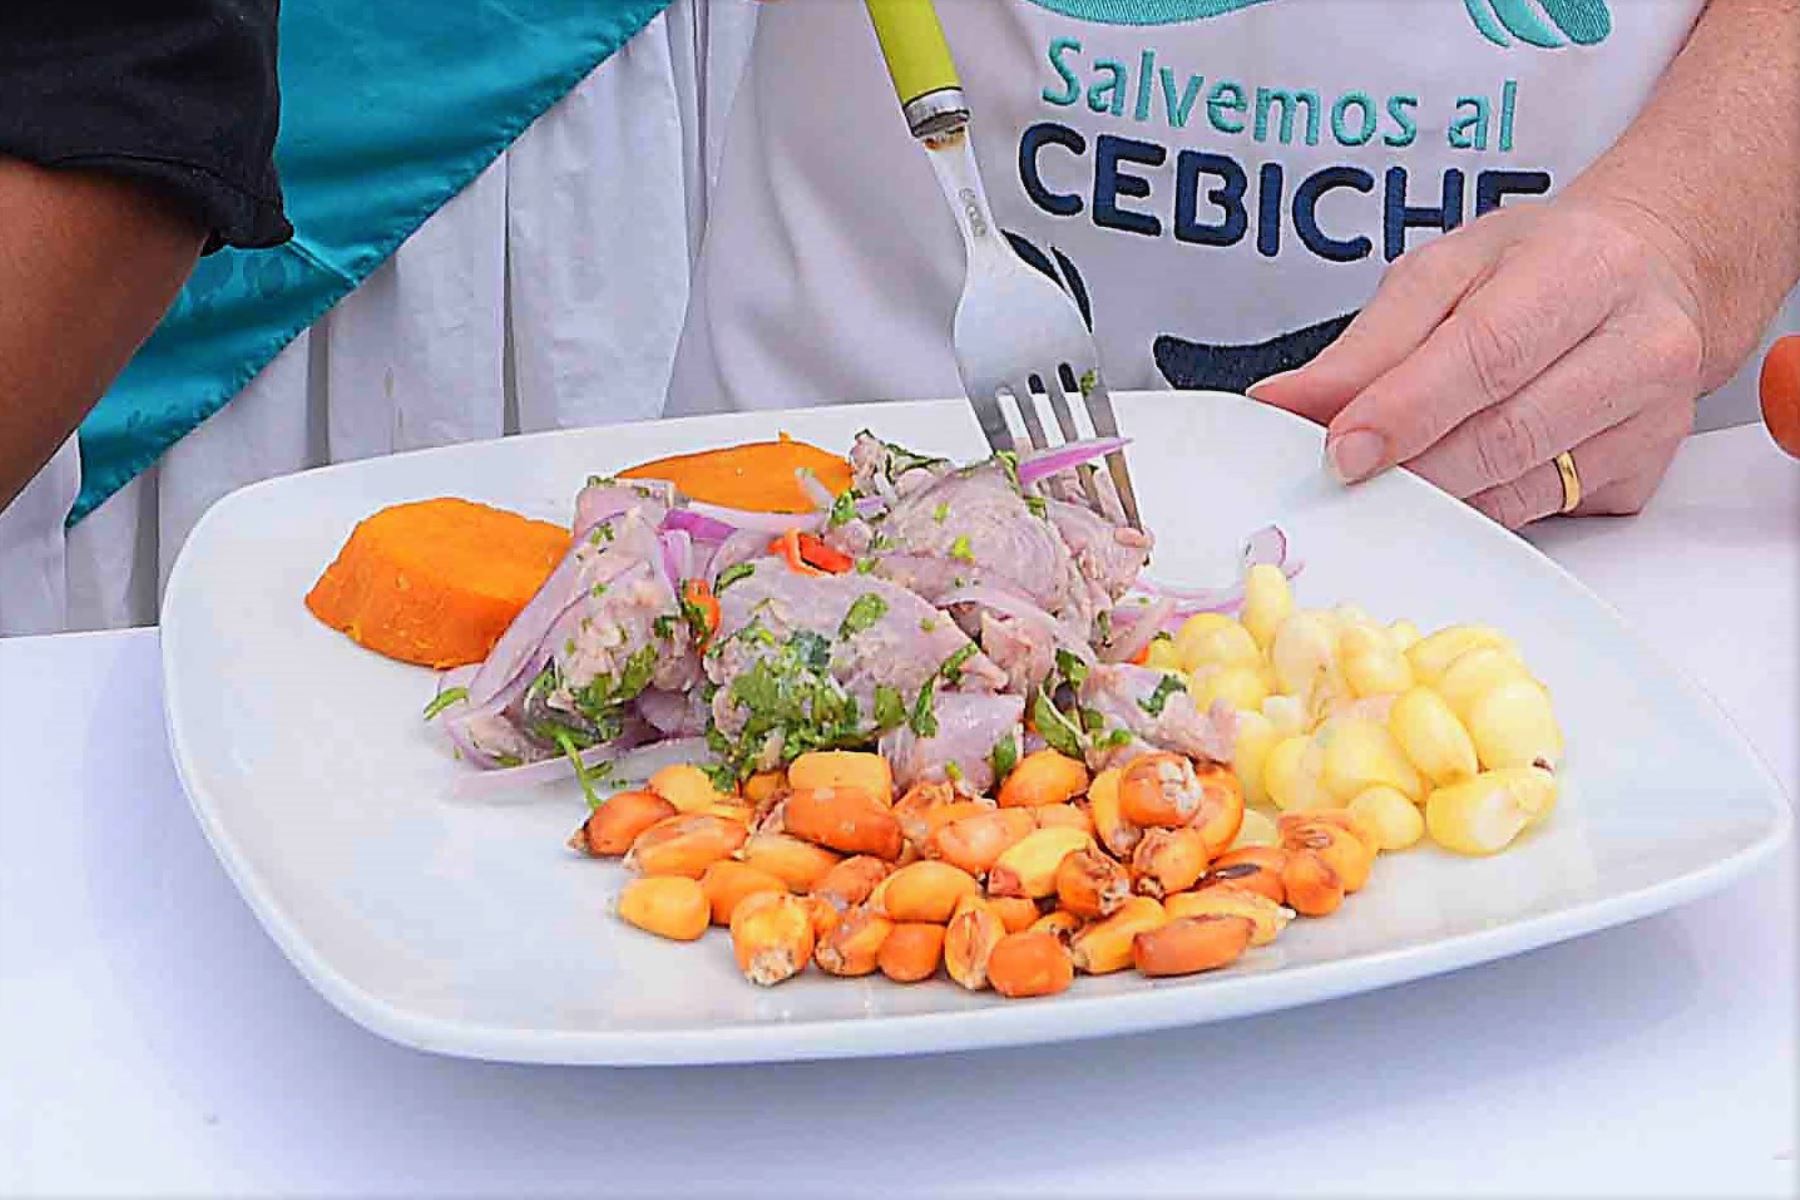 Programa “A comer pescado” aconseja incluir este alimento nutritivo en preparaciones saludables como el cebiche, plato bandera del Perú. ANDINA